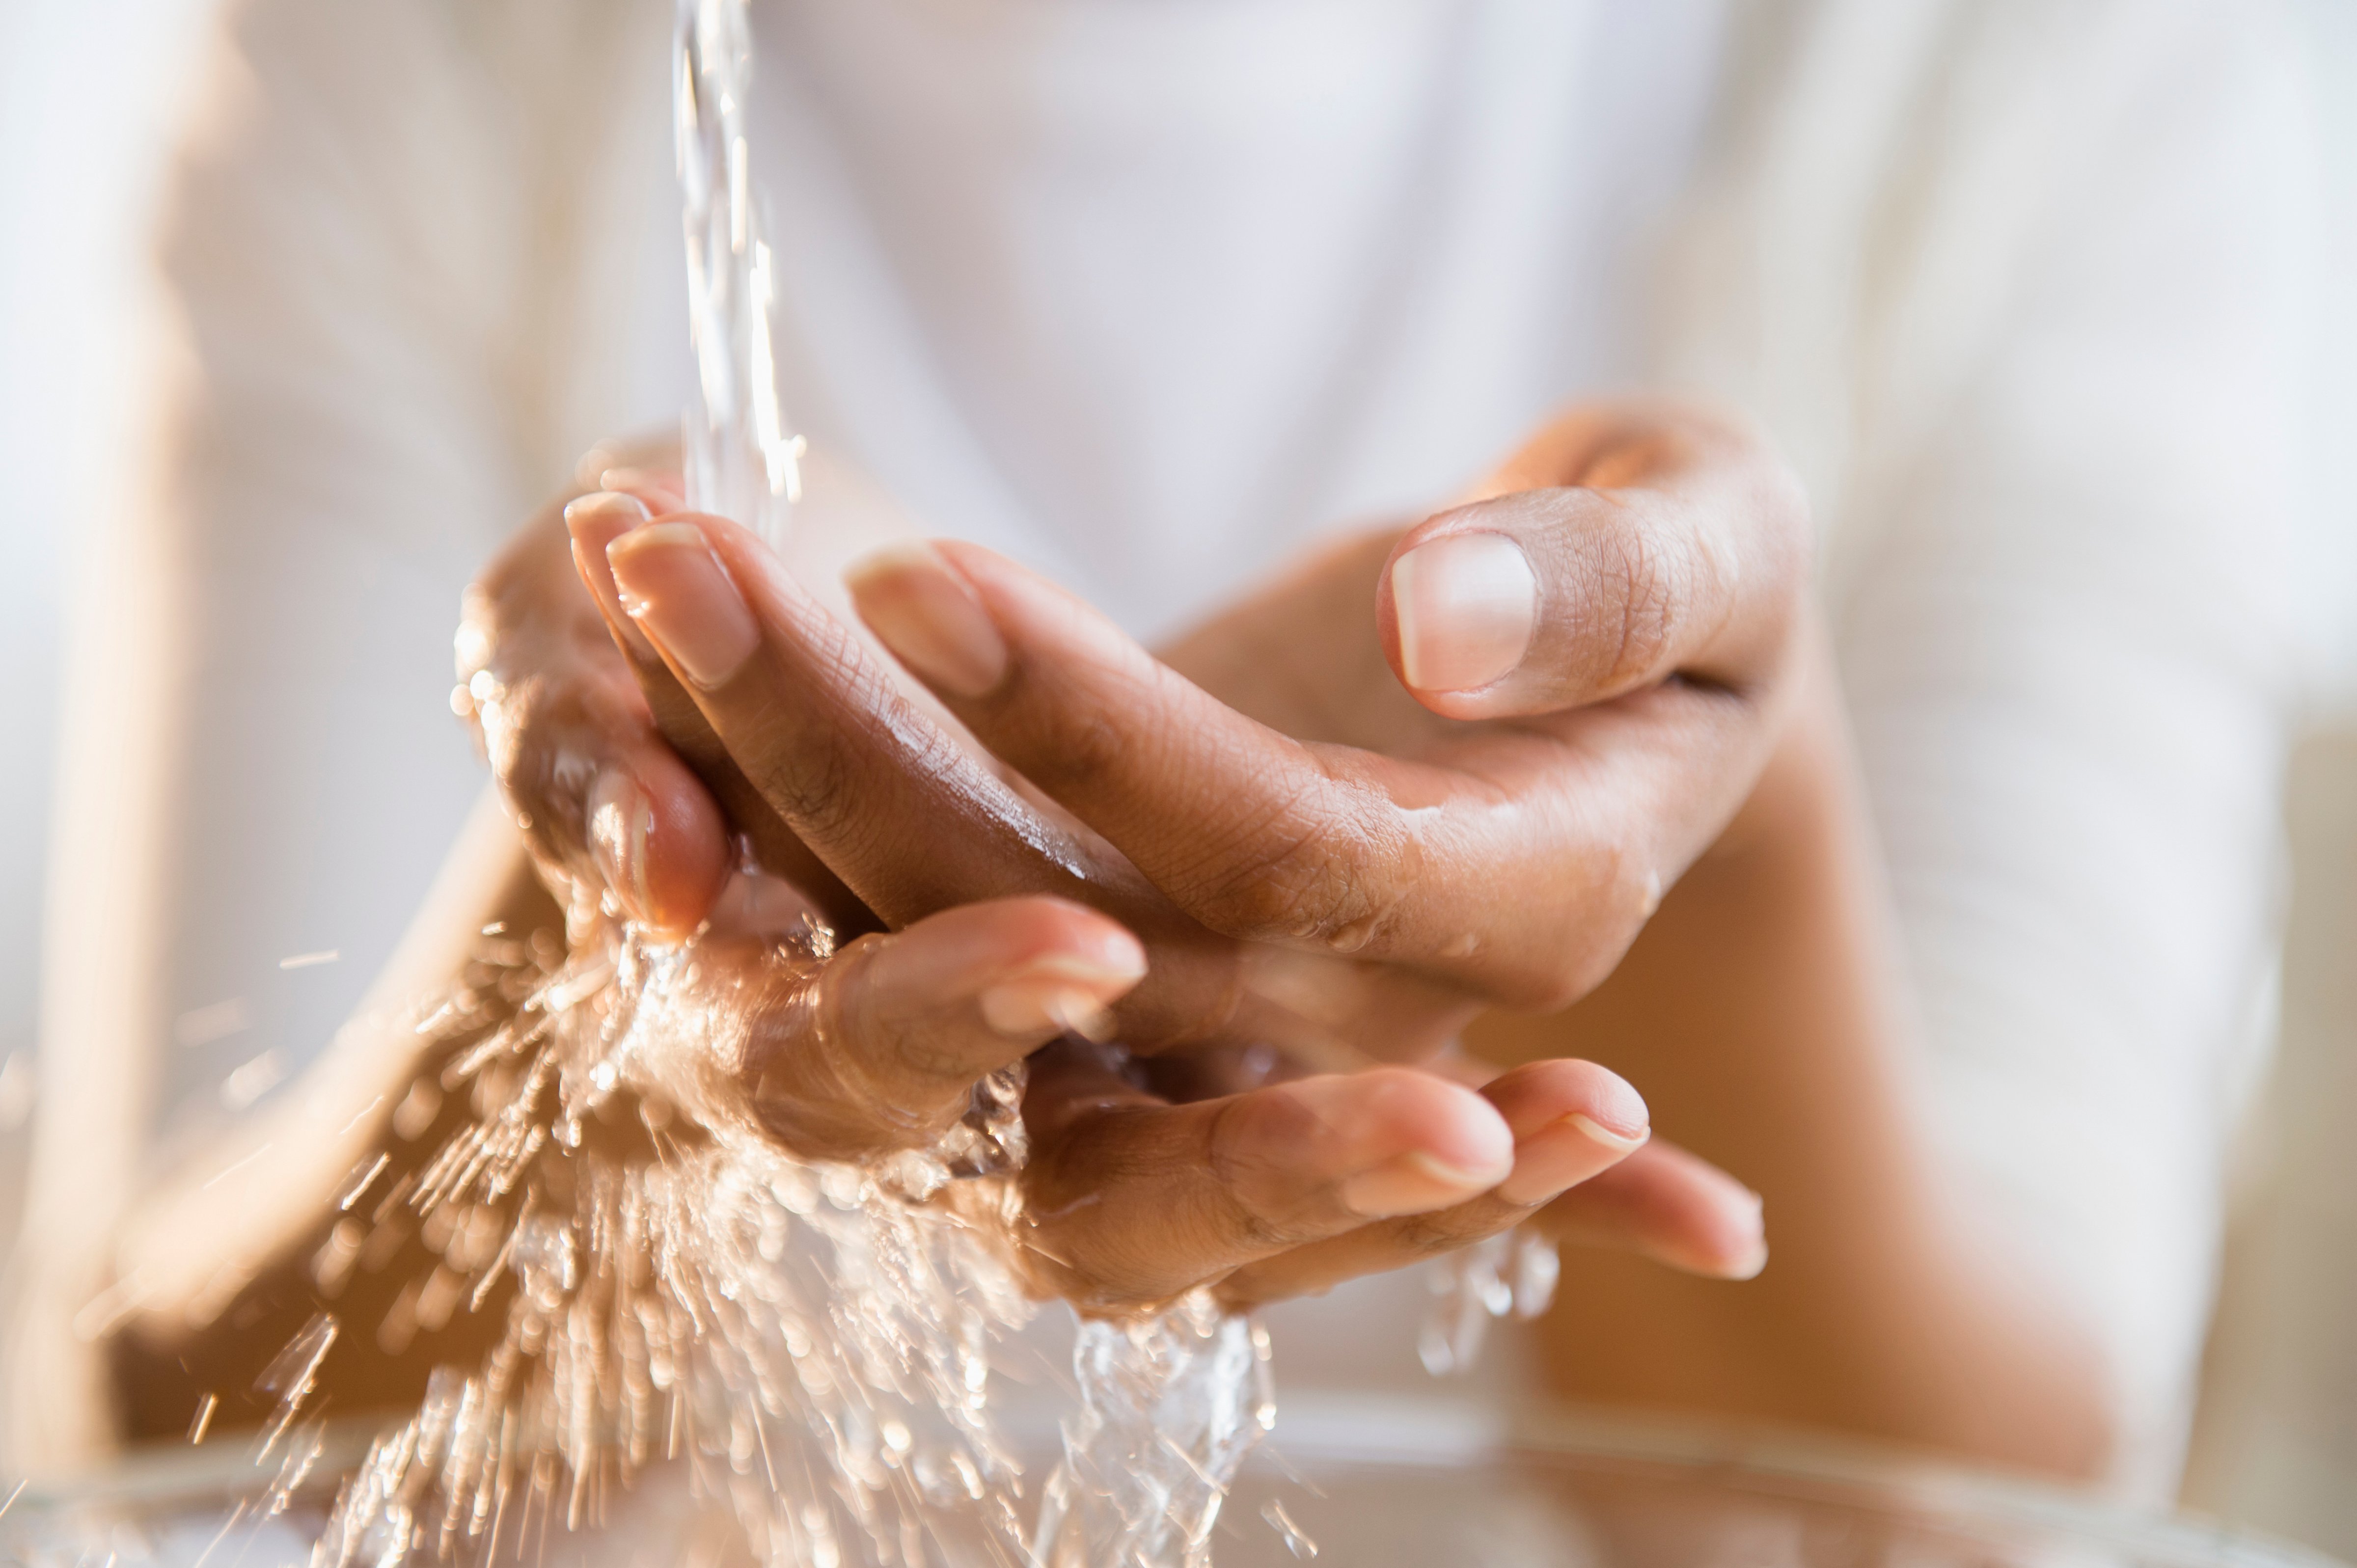 handwashing-cold-water